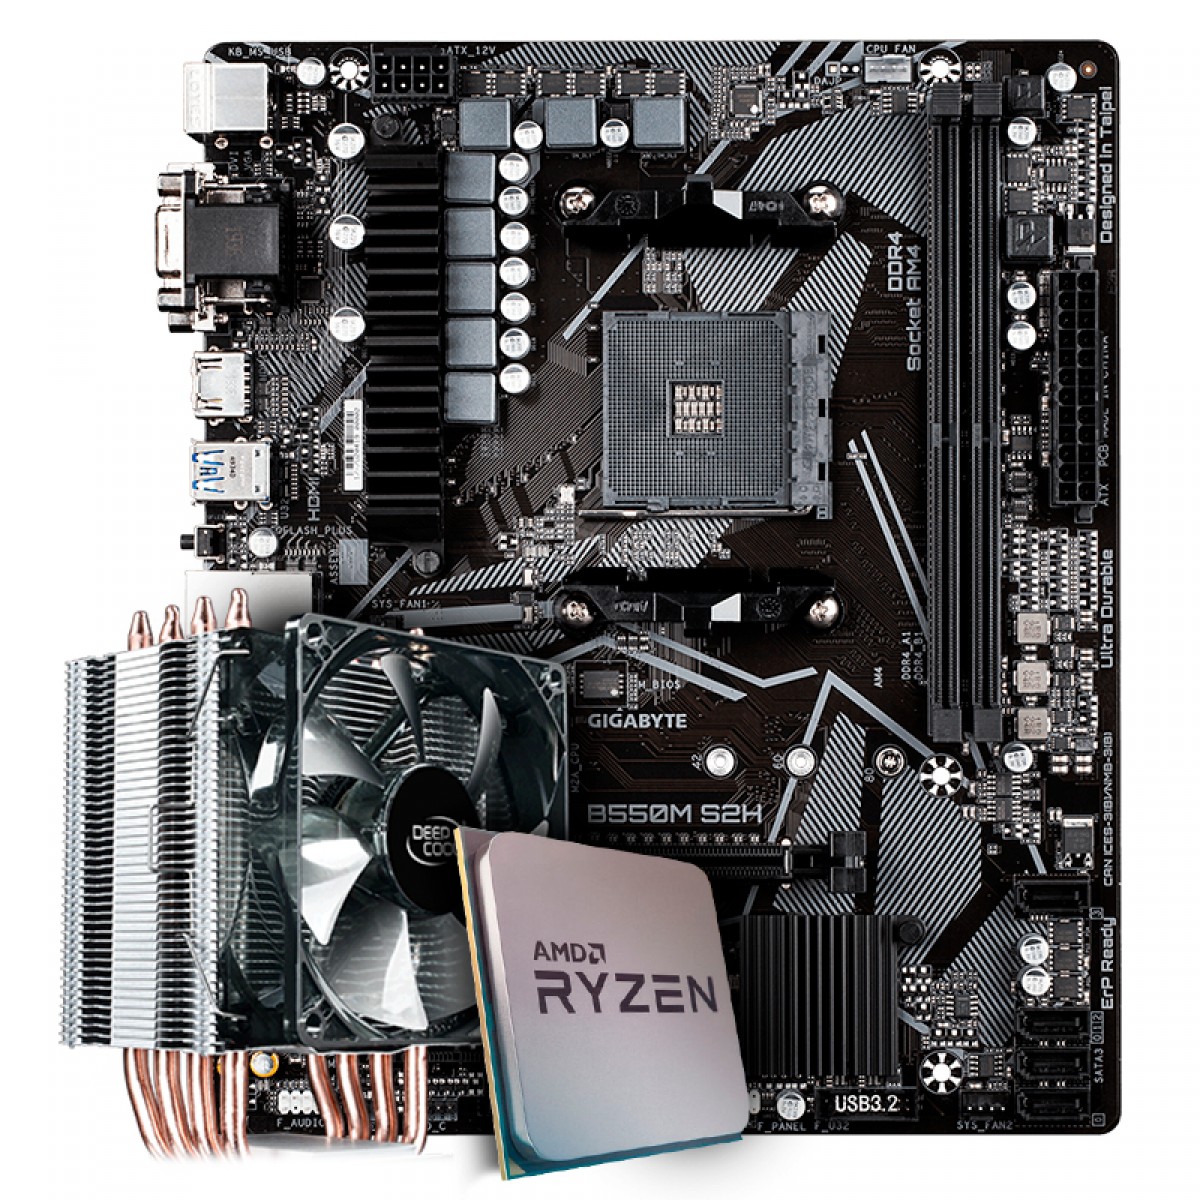 Kit Upgrade Placa Mãe Gigabyte B550M S2H AMD AM4 + Processador AMD Ryzen 7 3800x 3.9GHz + Cooler Deepcool Gammaxx